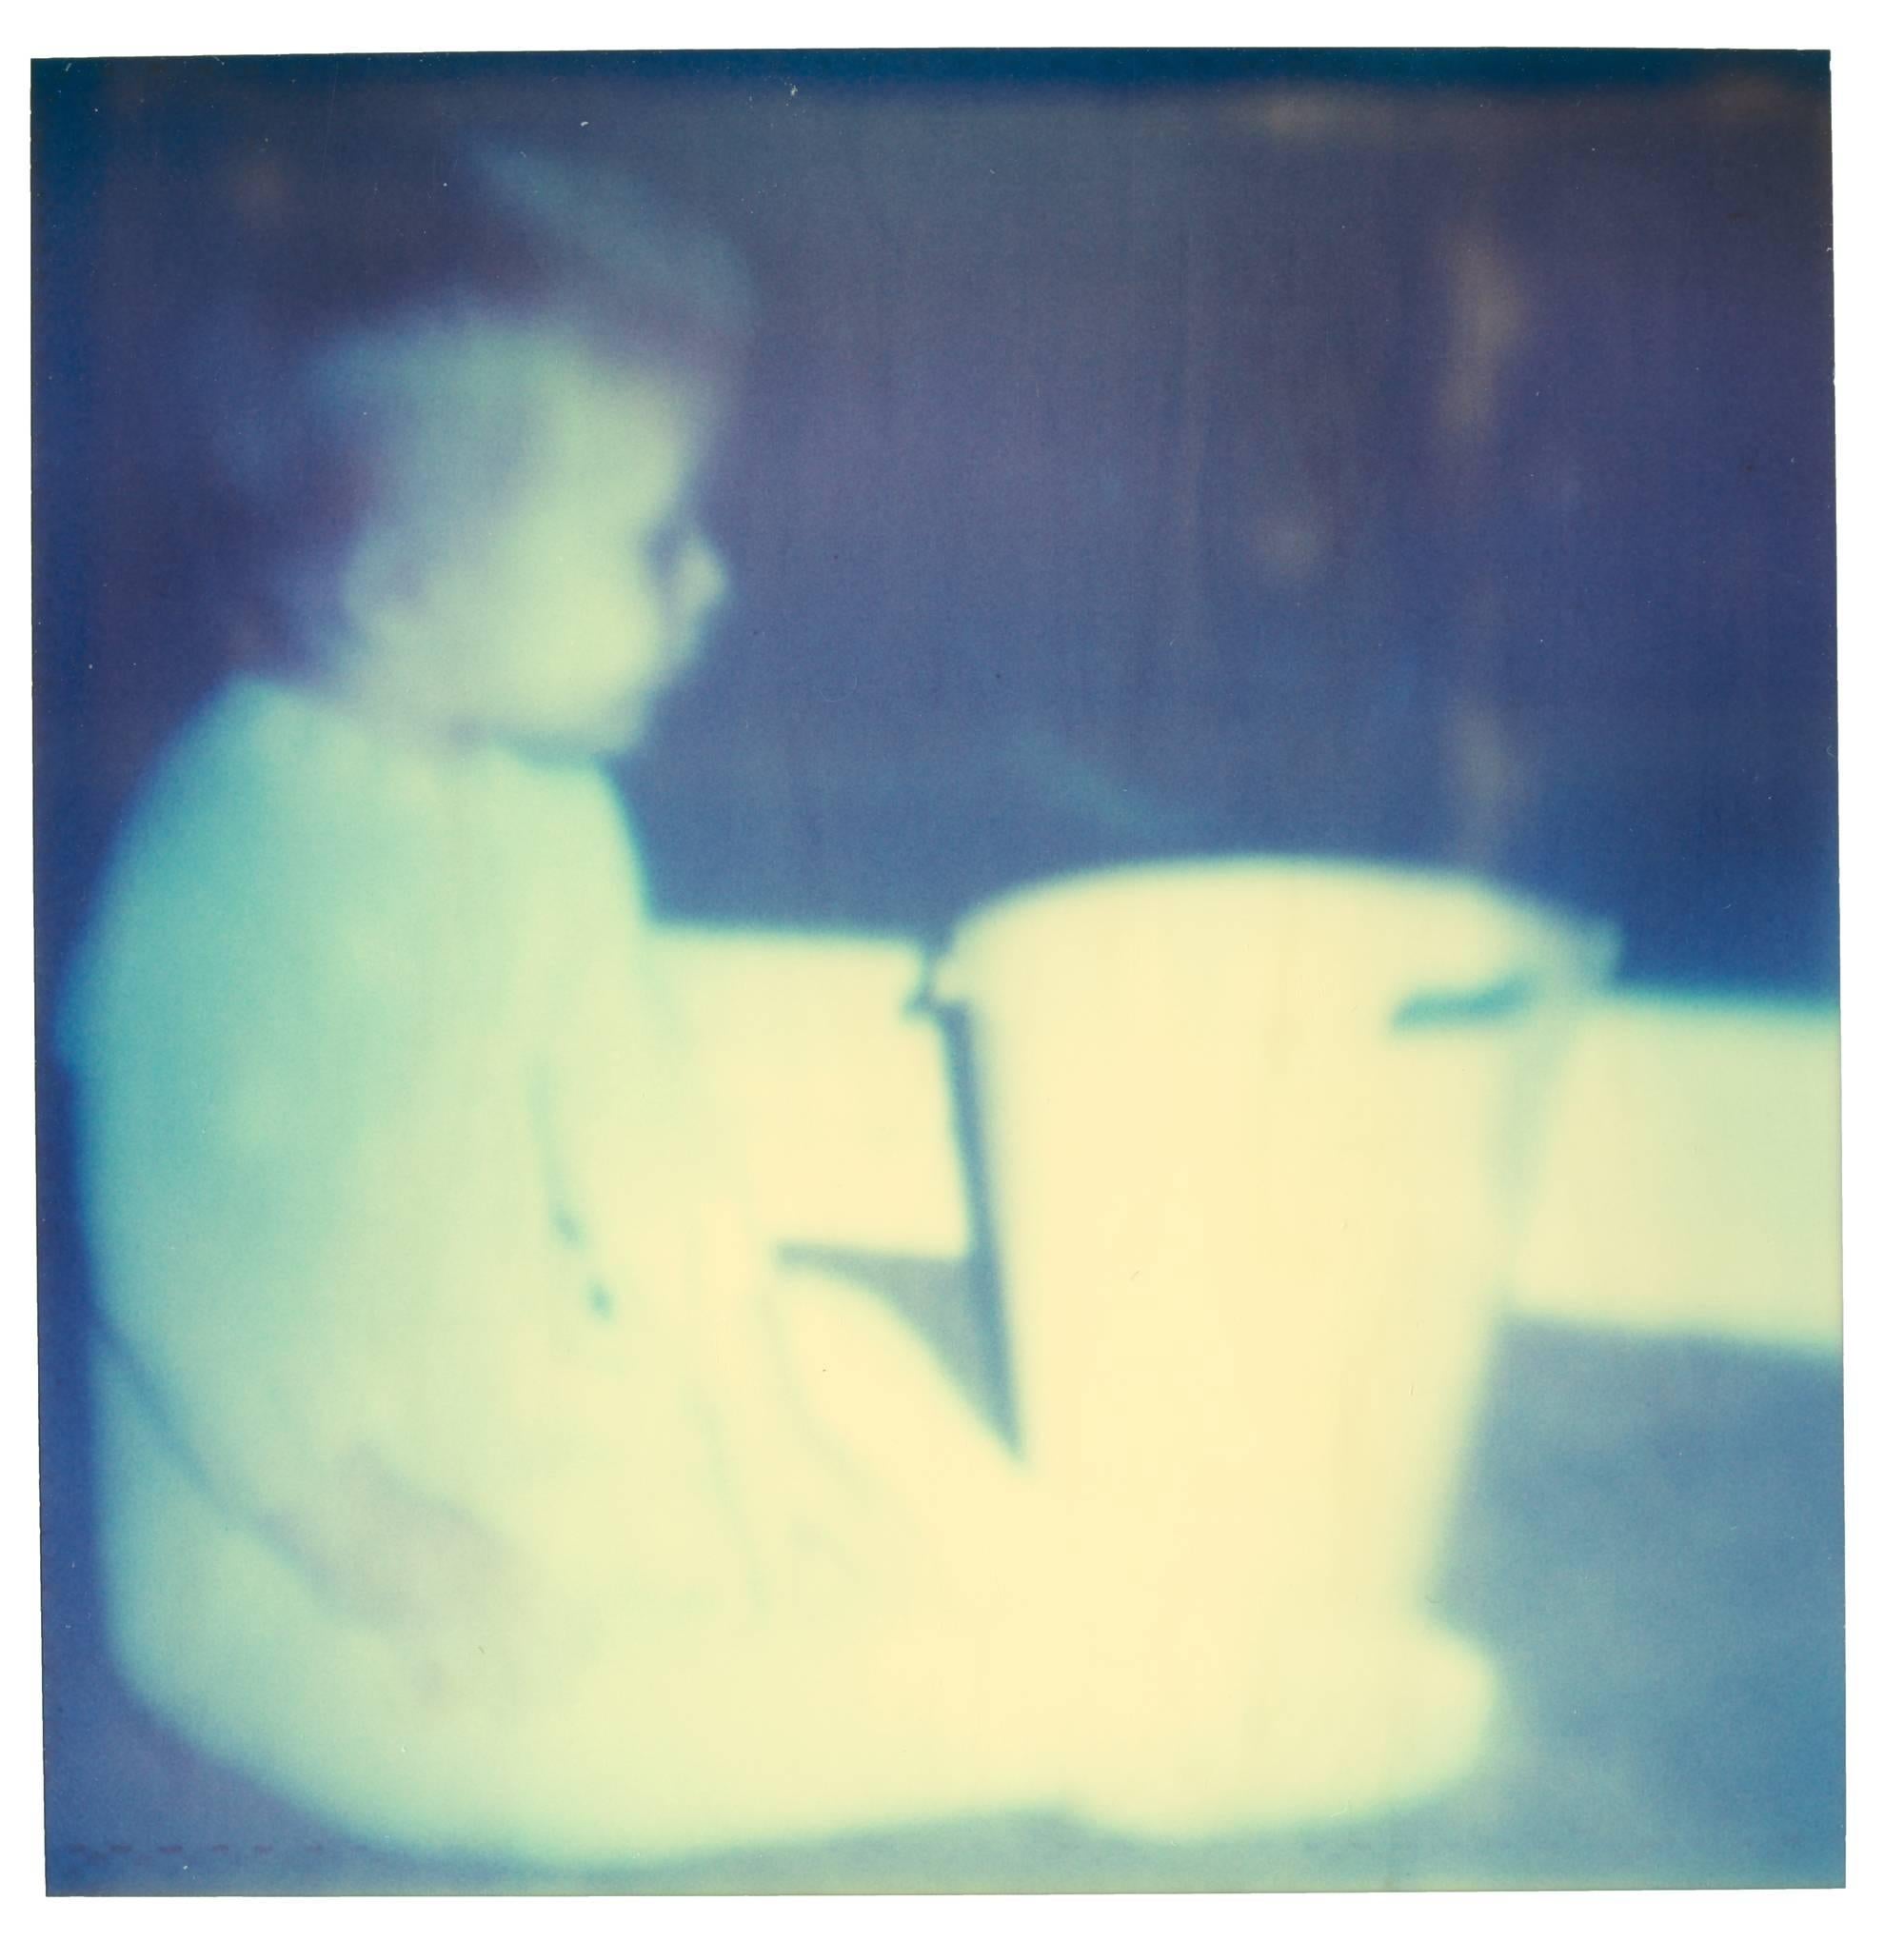 Weißer Plastikeimer (Stay), aus der Erinnerungssequenz von Ryan Gosling.
2006, 85x85cm, 4 Stück, je 39x38,5cm, Auflage 2/5, 
analoge C-Prints, gedruckt von der Künstlerin auf Fuji Archive Crystal Paper, 
basierend auf einem Polaroid. Signiert auf